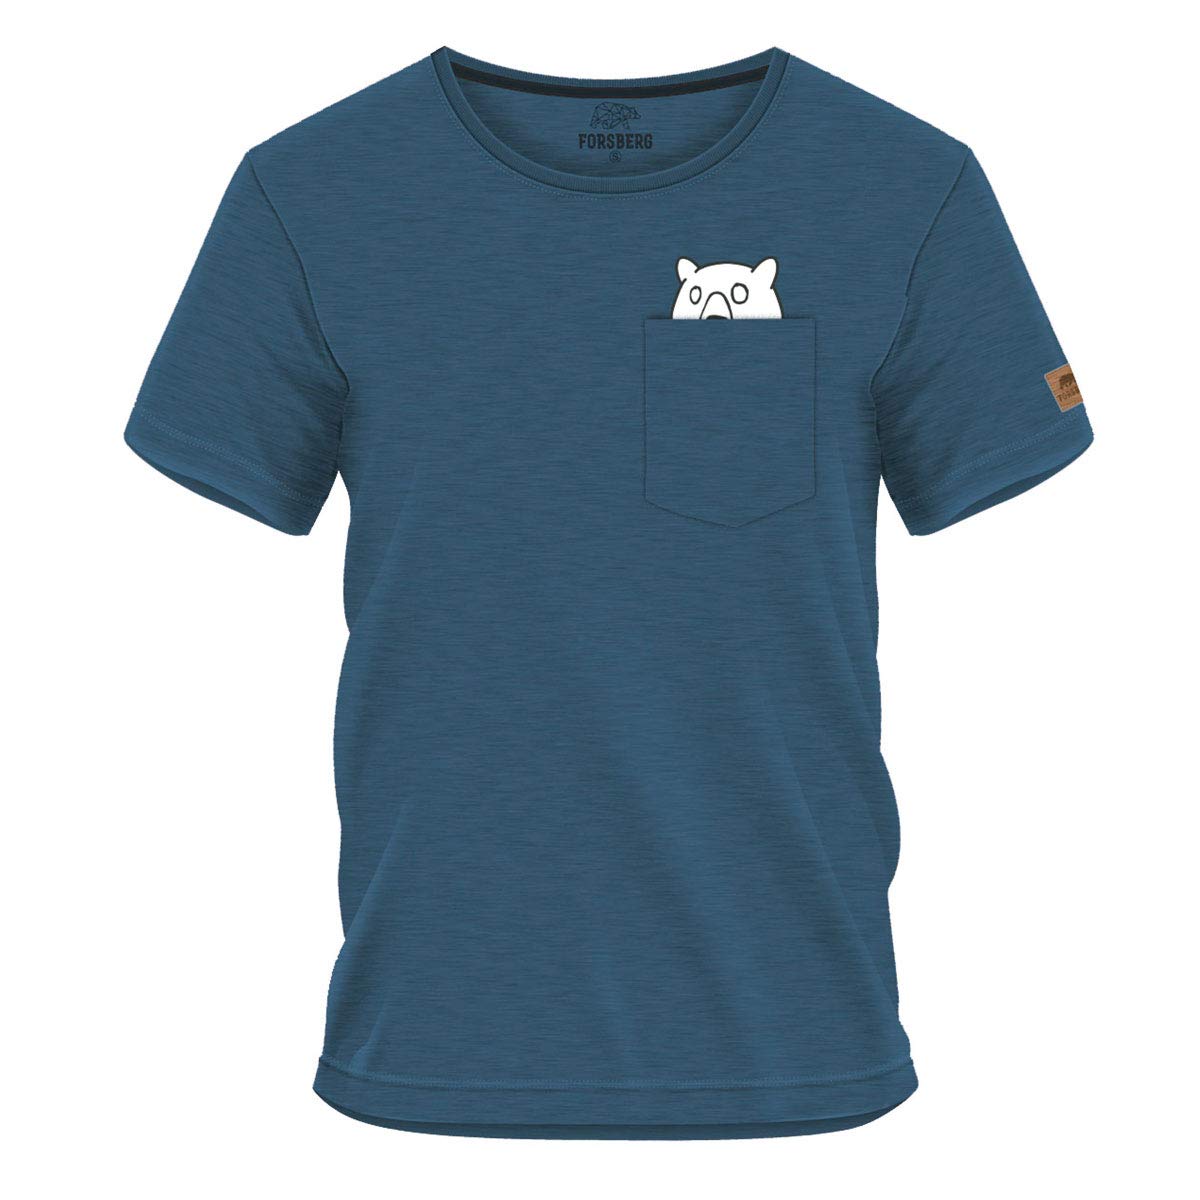 FORSBERG Ölbrorson T-Shirt Brusttasche mit prostendem Bier Bär Funshirt Rundhals bequem robust, Farbe:blau, Größe:3XL